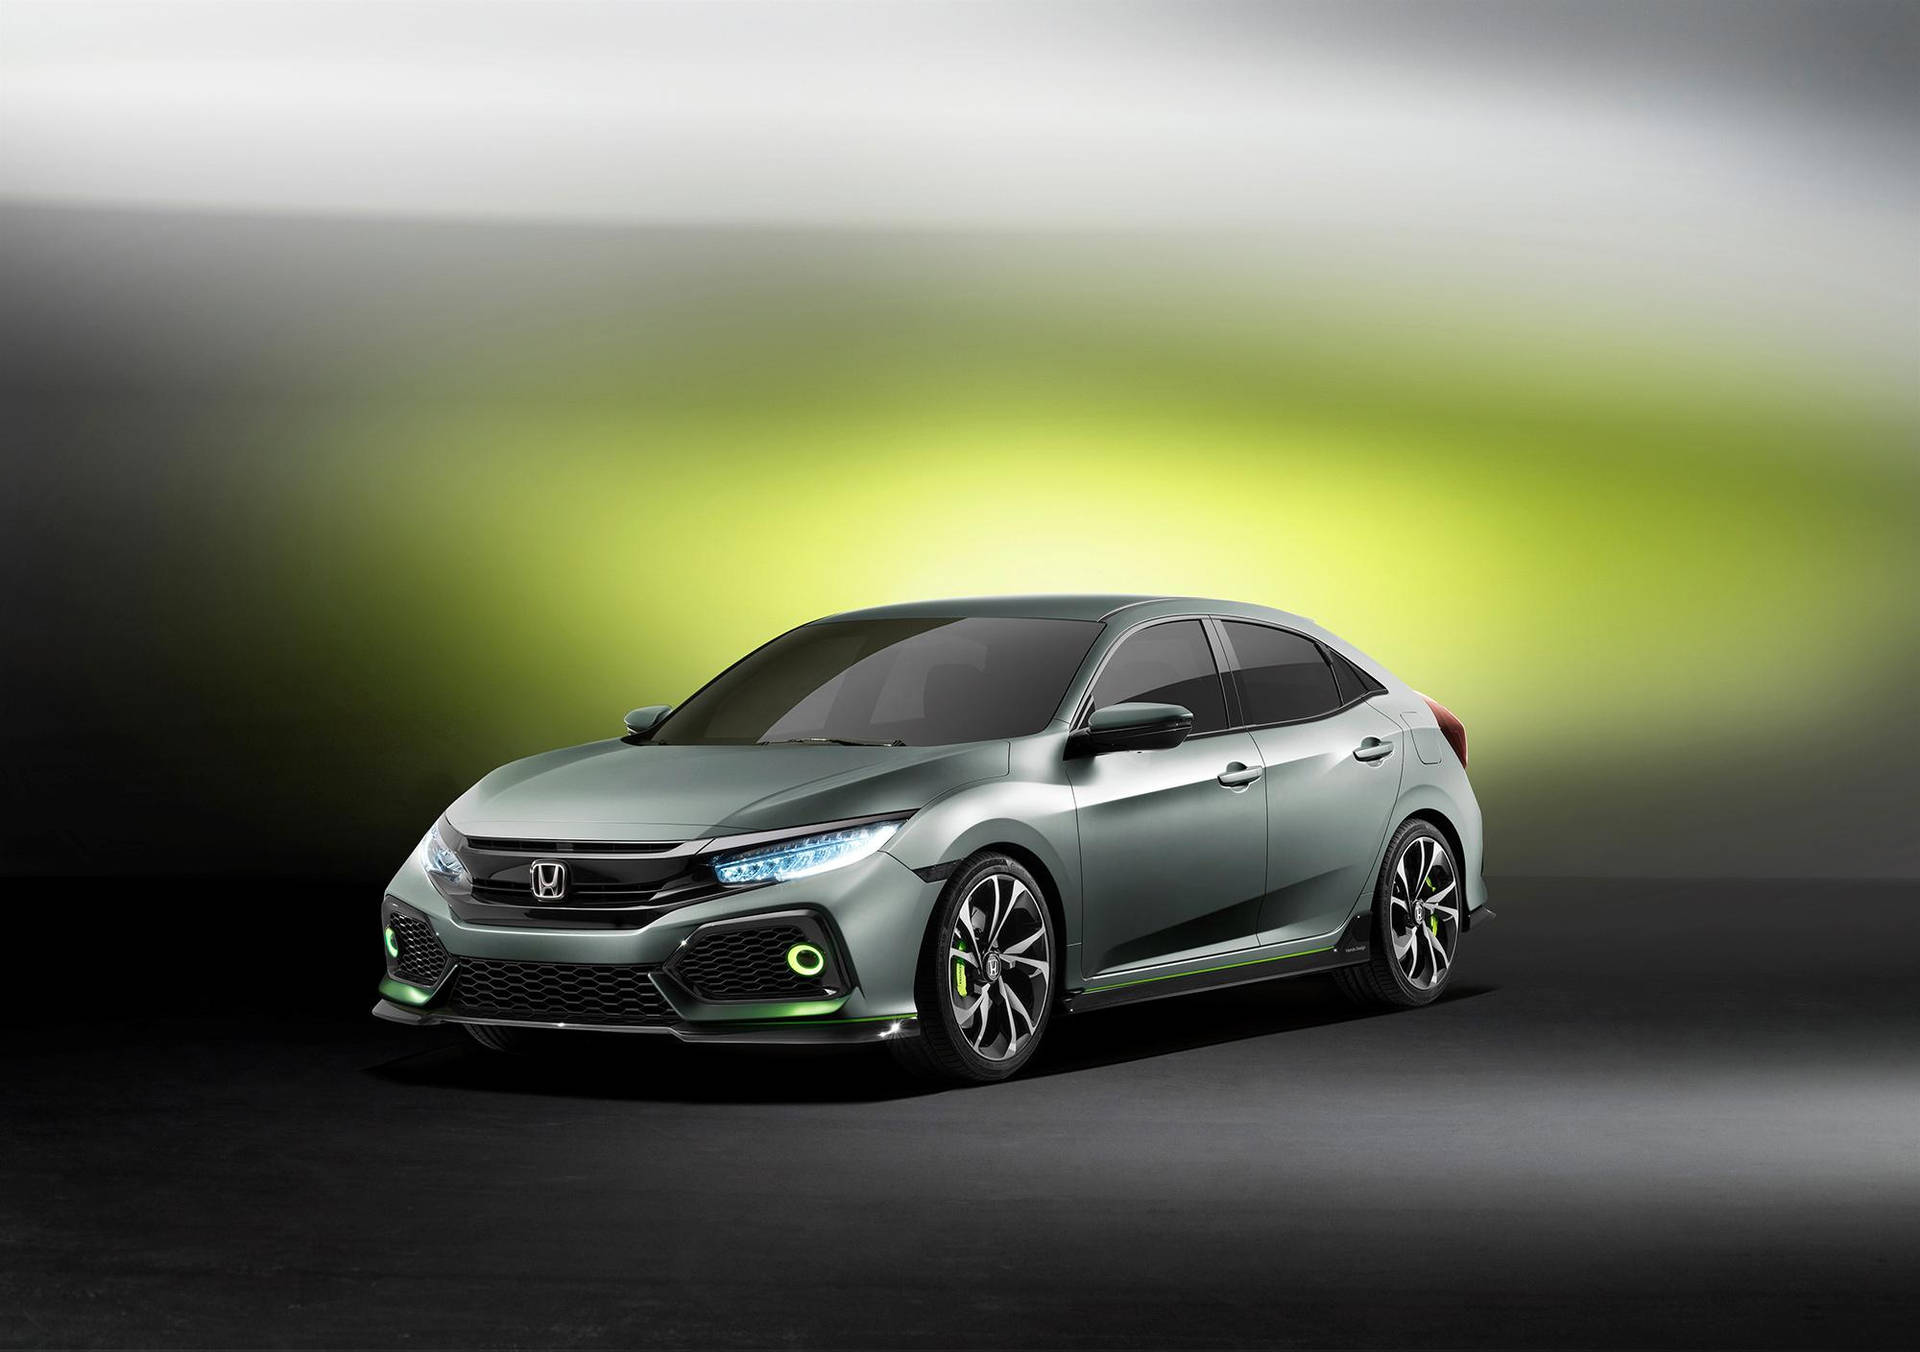 4K Honda Civic Sleek Green Wallpaper